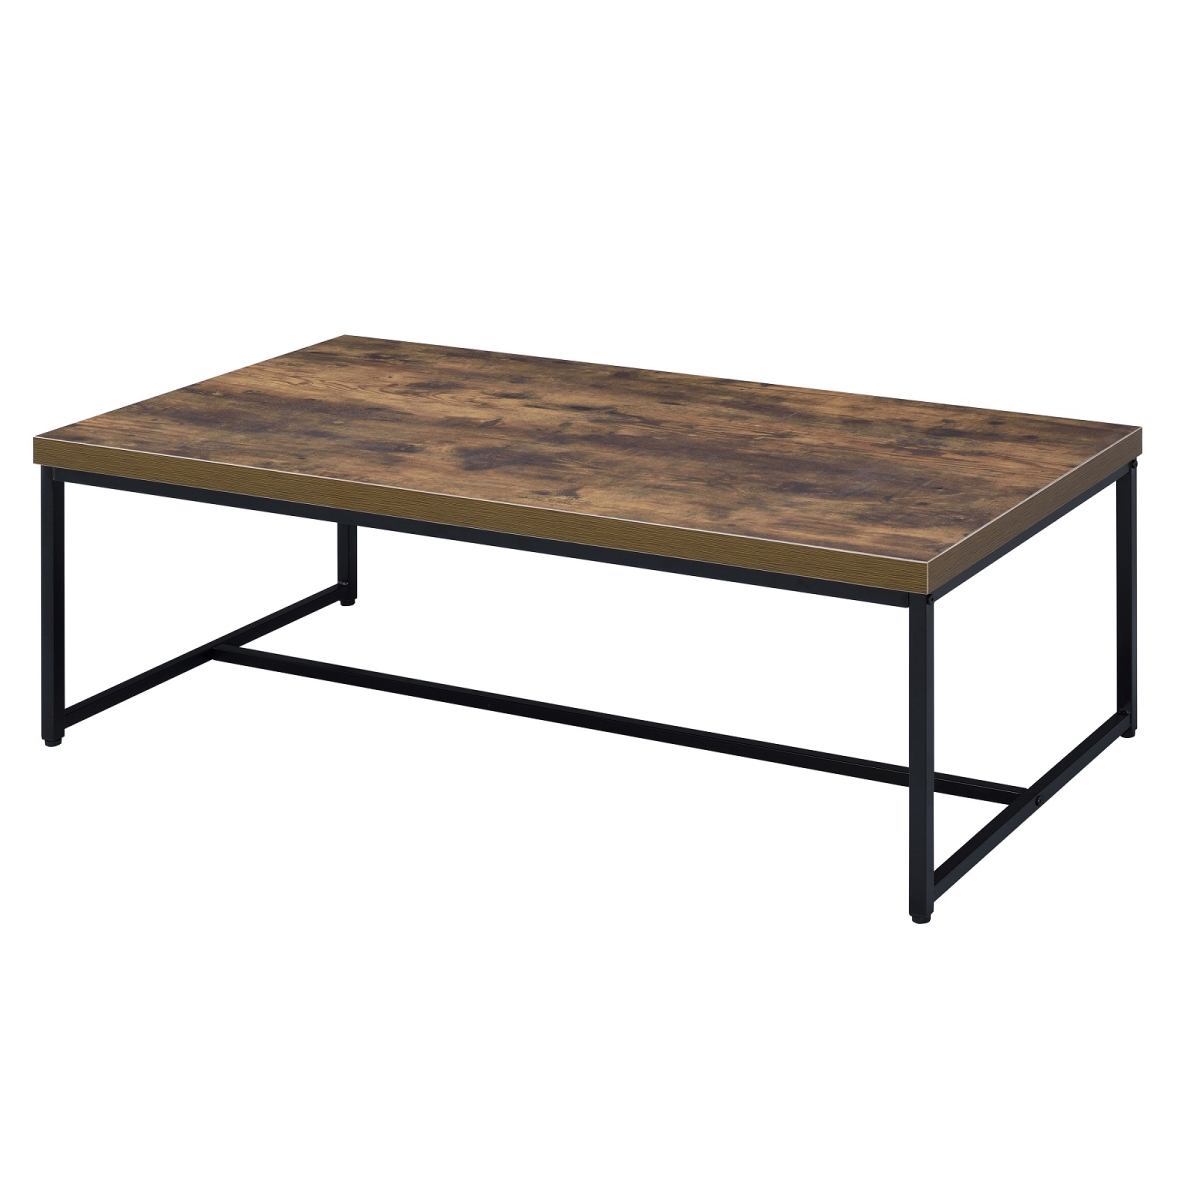 Urban Designs 4751608 Weathered Oak Finish Coffee Table, 16 X 24 X 47 In.